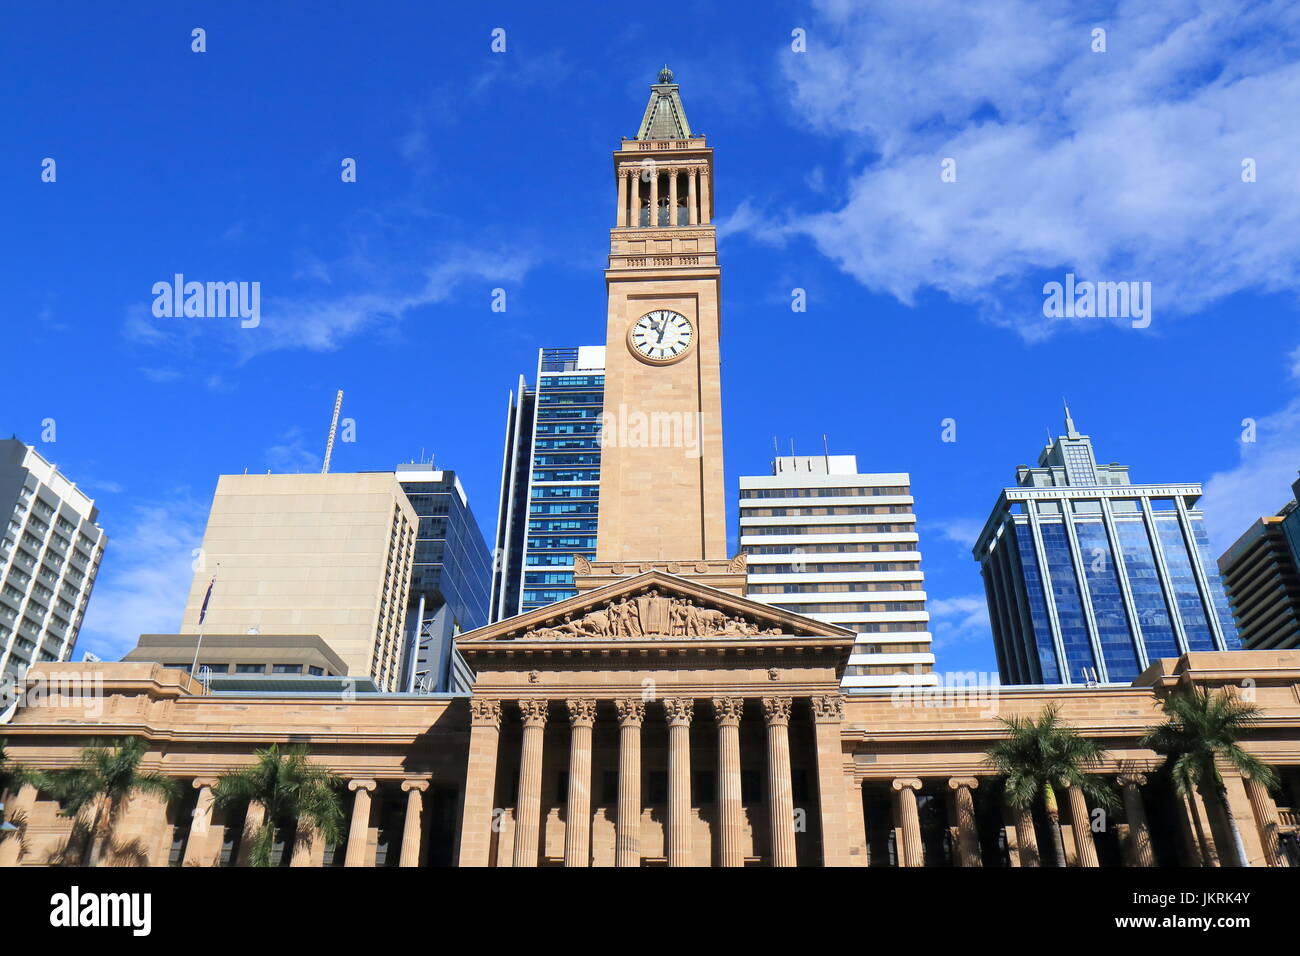 L'Hôtel de ville musée de Brisbane Australie l'architecture historique Banque D'Images